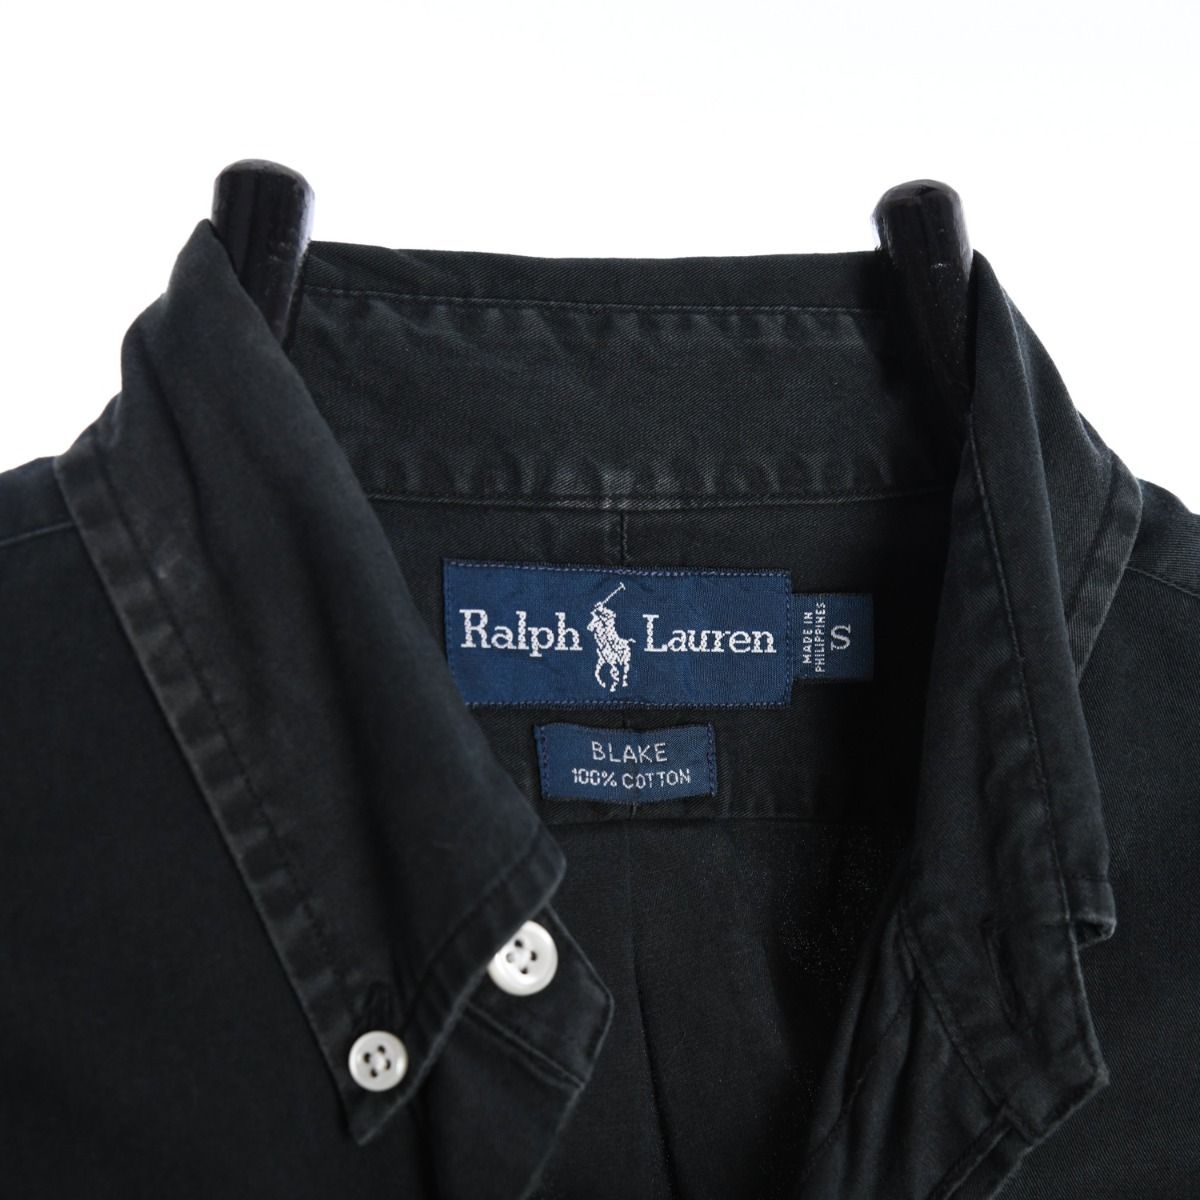 Ralph Lauren Blake Shirt